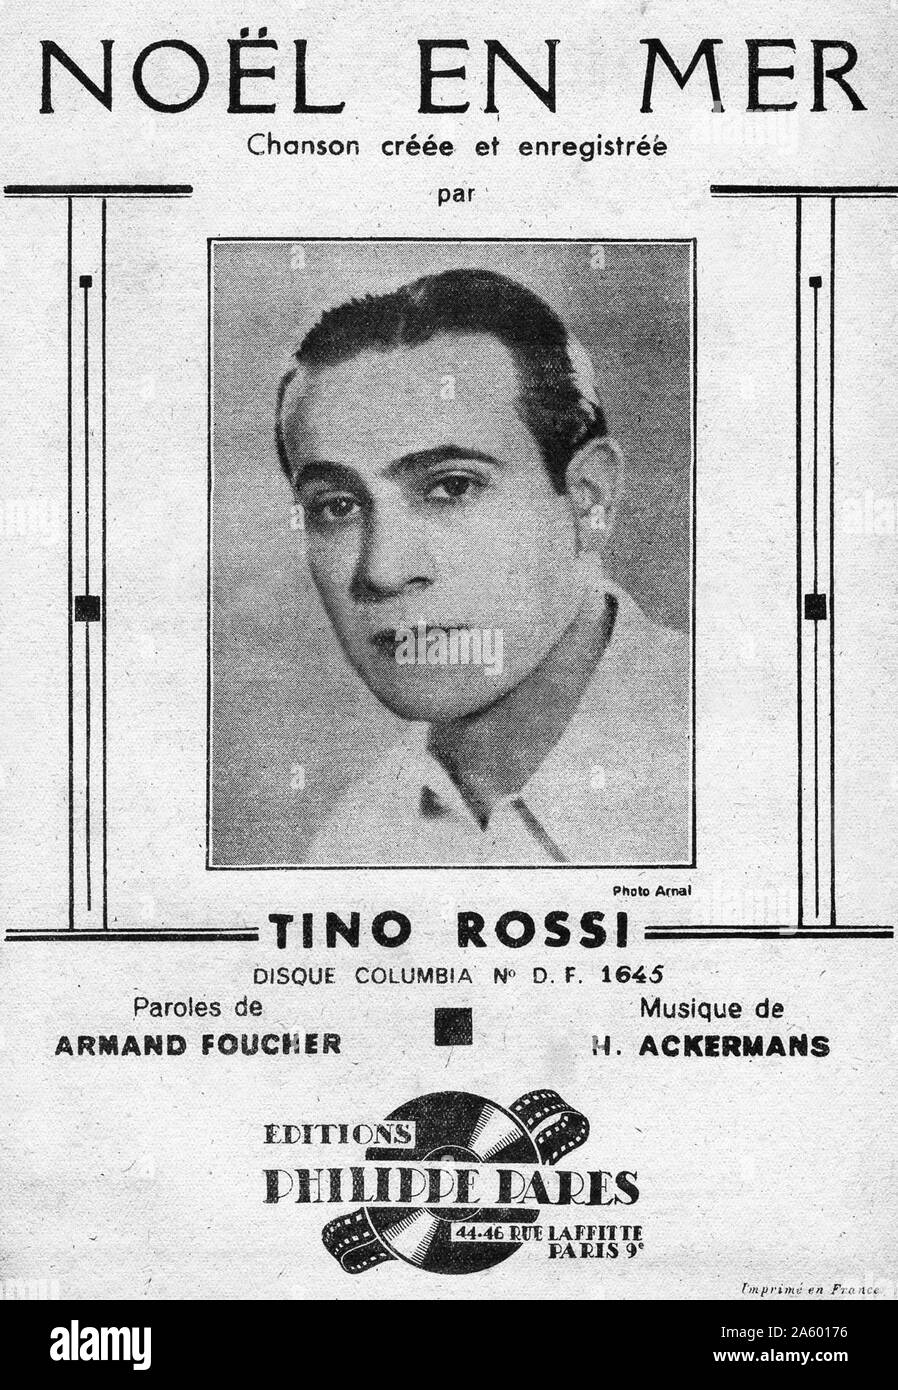 Constantin 'Tino' Rossi (29 de abril de 1907 - 26 de septiembre de 1983) cantante francés corsa y actor de cine. Foto de stock